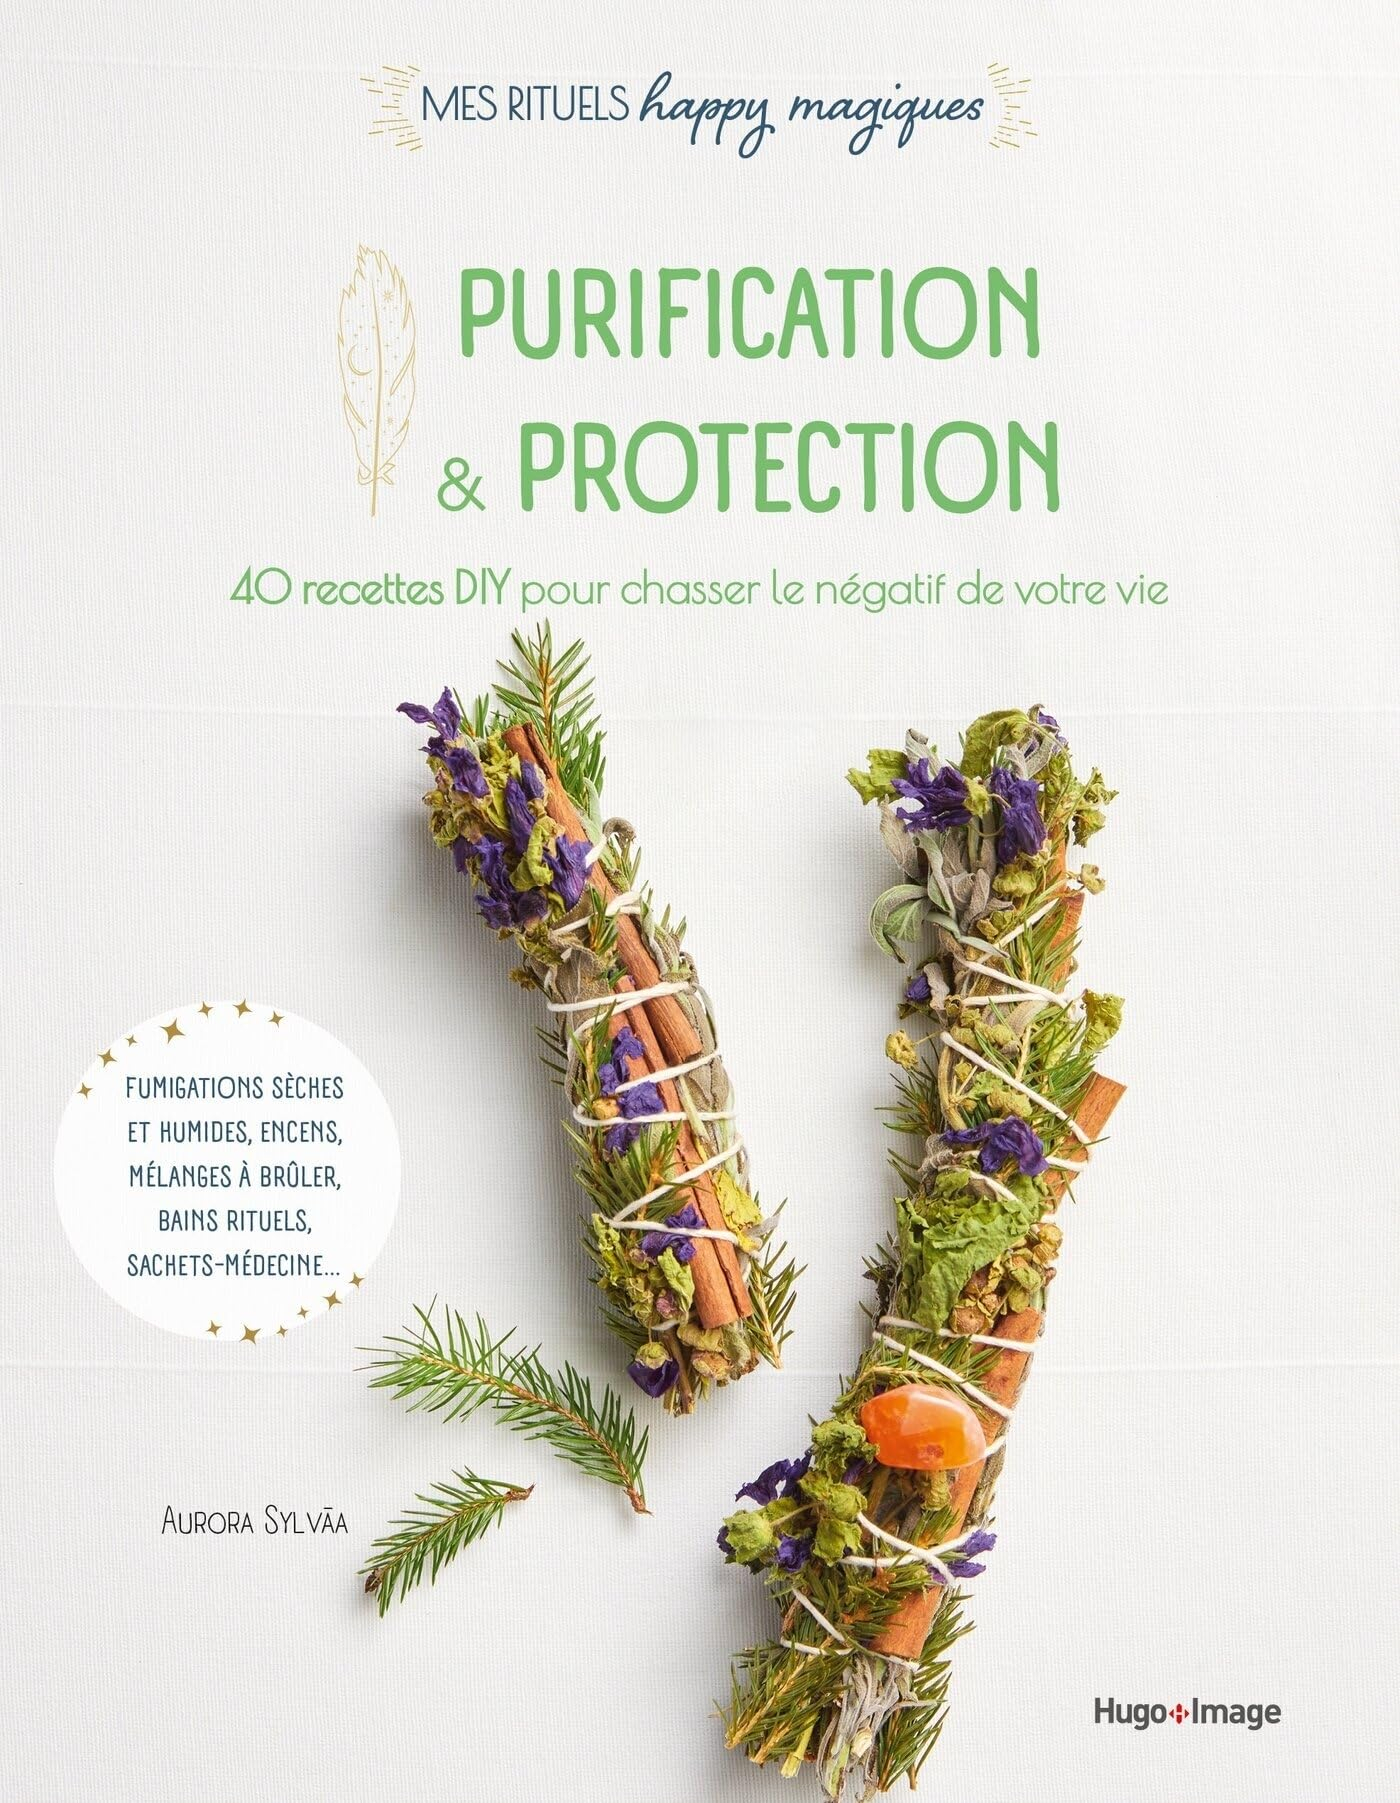 Purification & protection : 40 recettes DIY pour chasser le négatif de votre vie : fumigations sèche